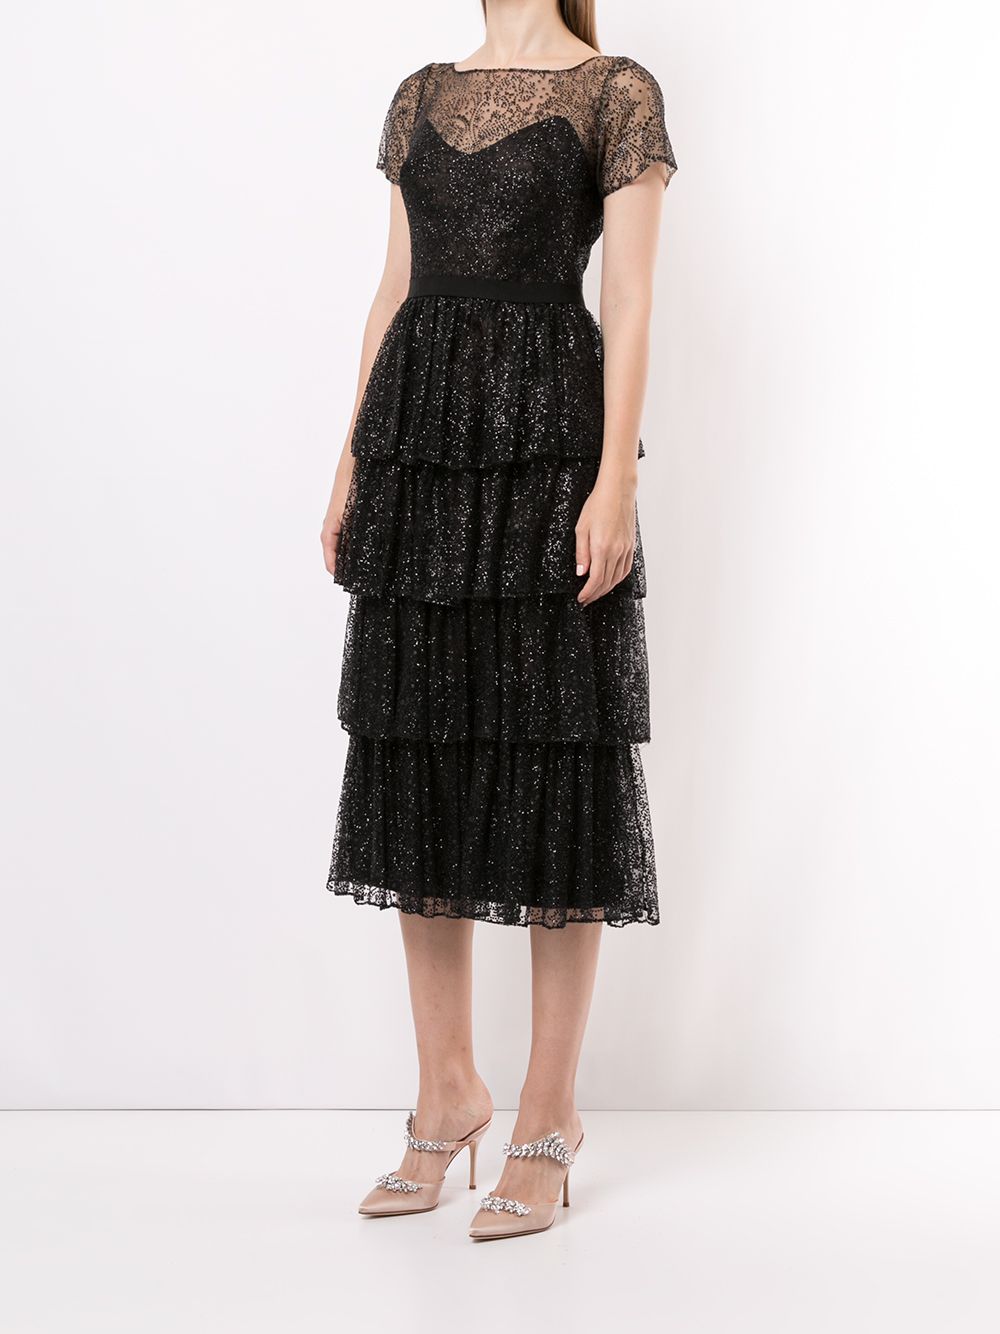 ярусное коктейльное платье с блестками Marchesa Notte 1532543550